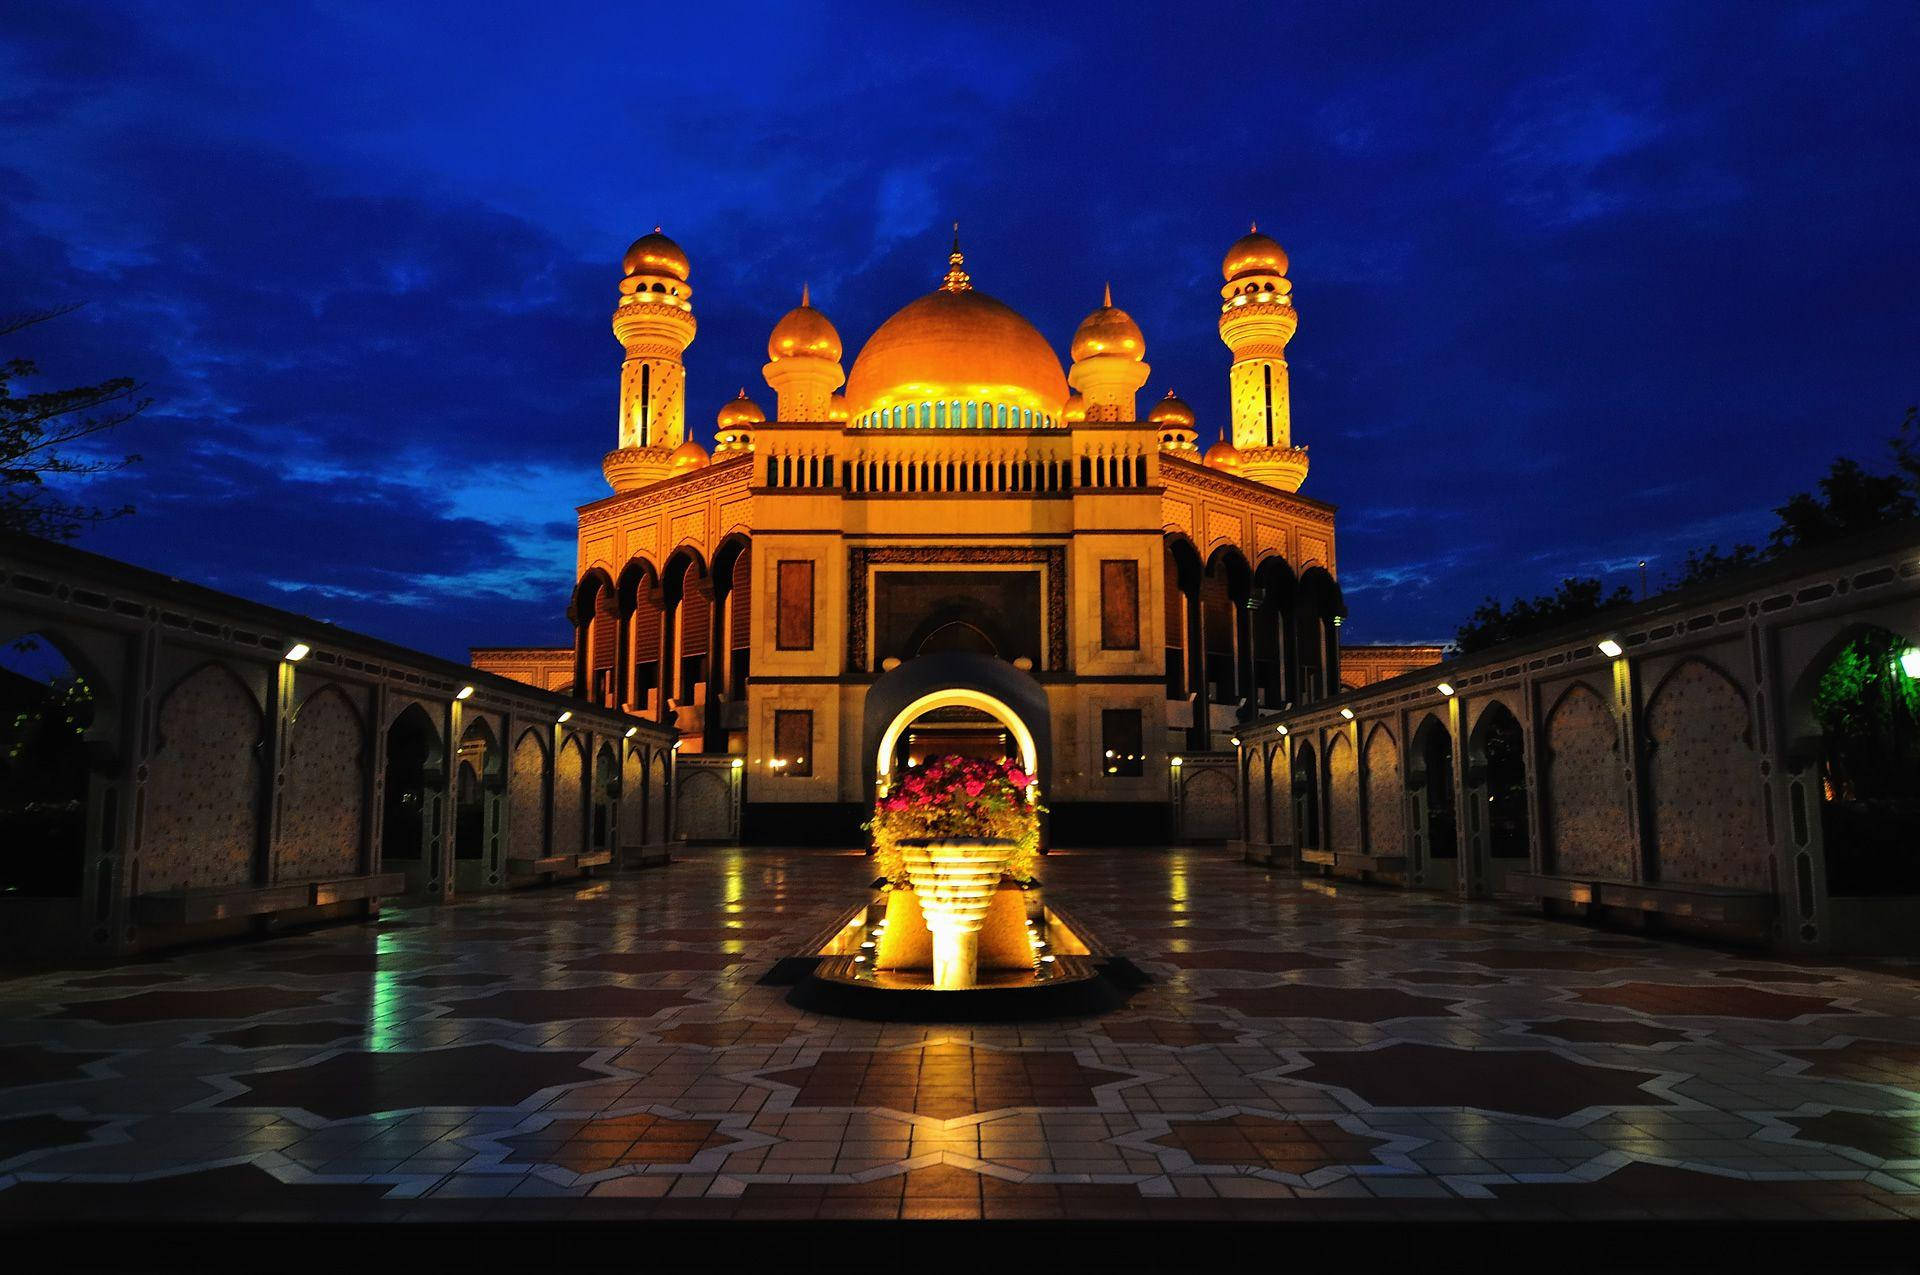 Moscheajame' Asr Di Brunei Di Notte Sfondo